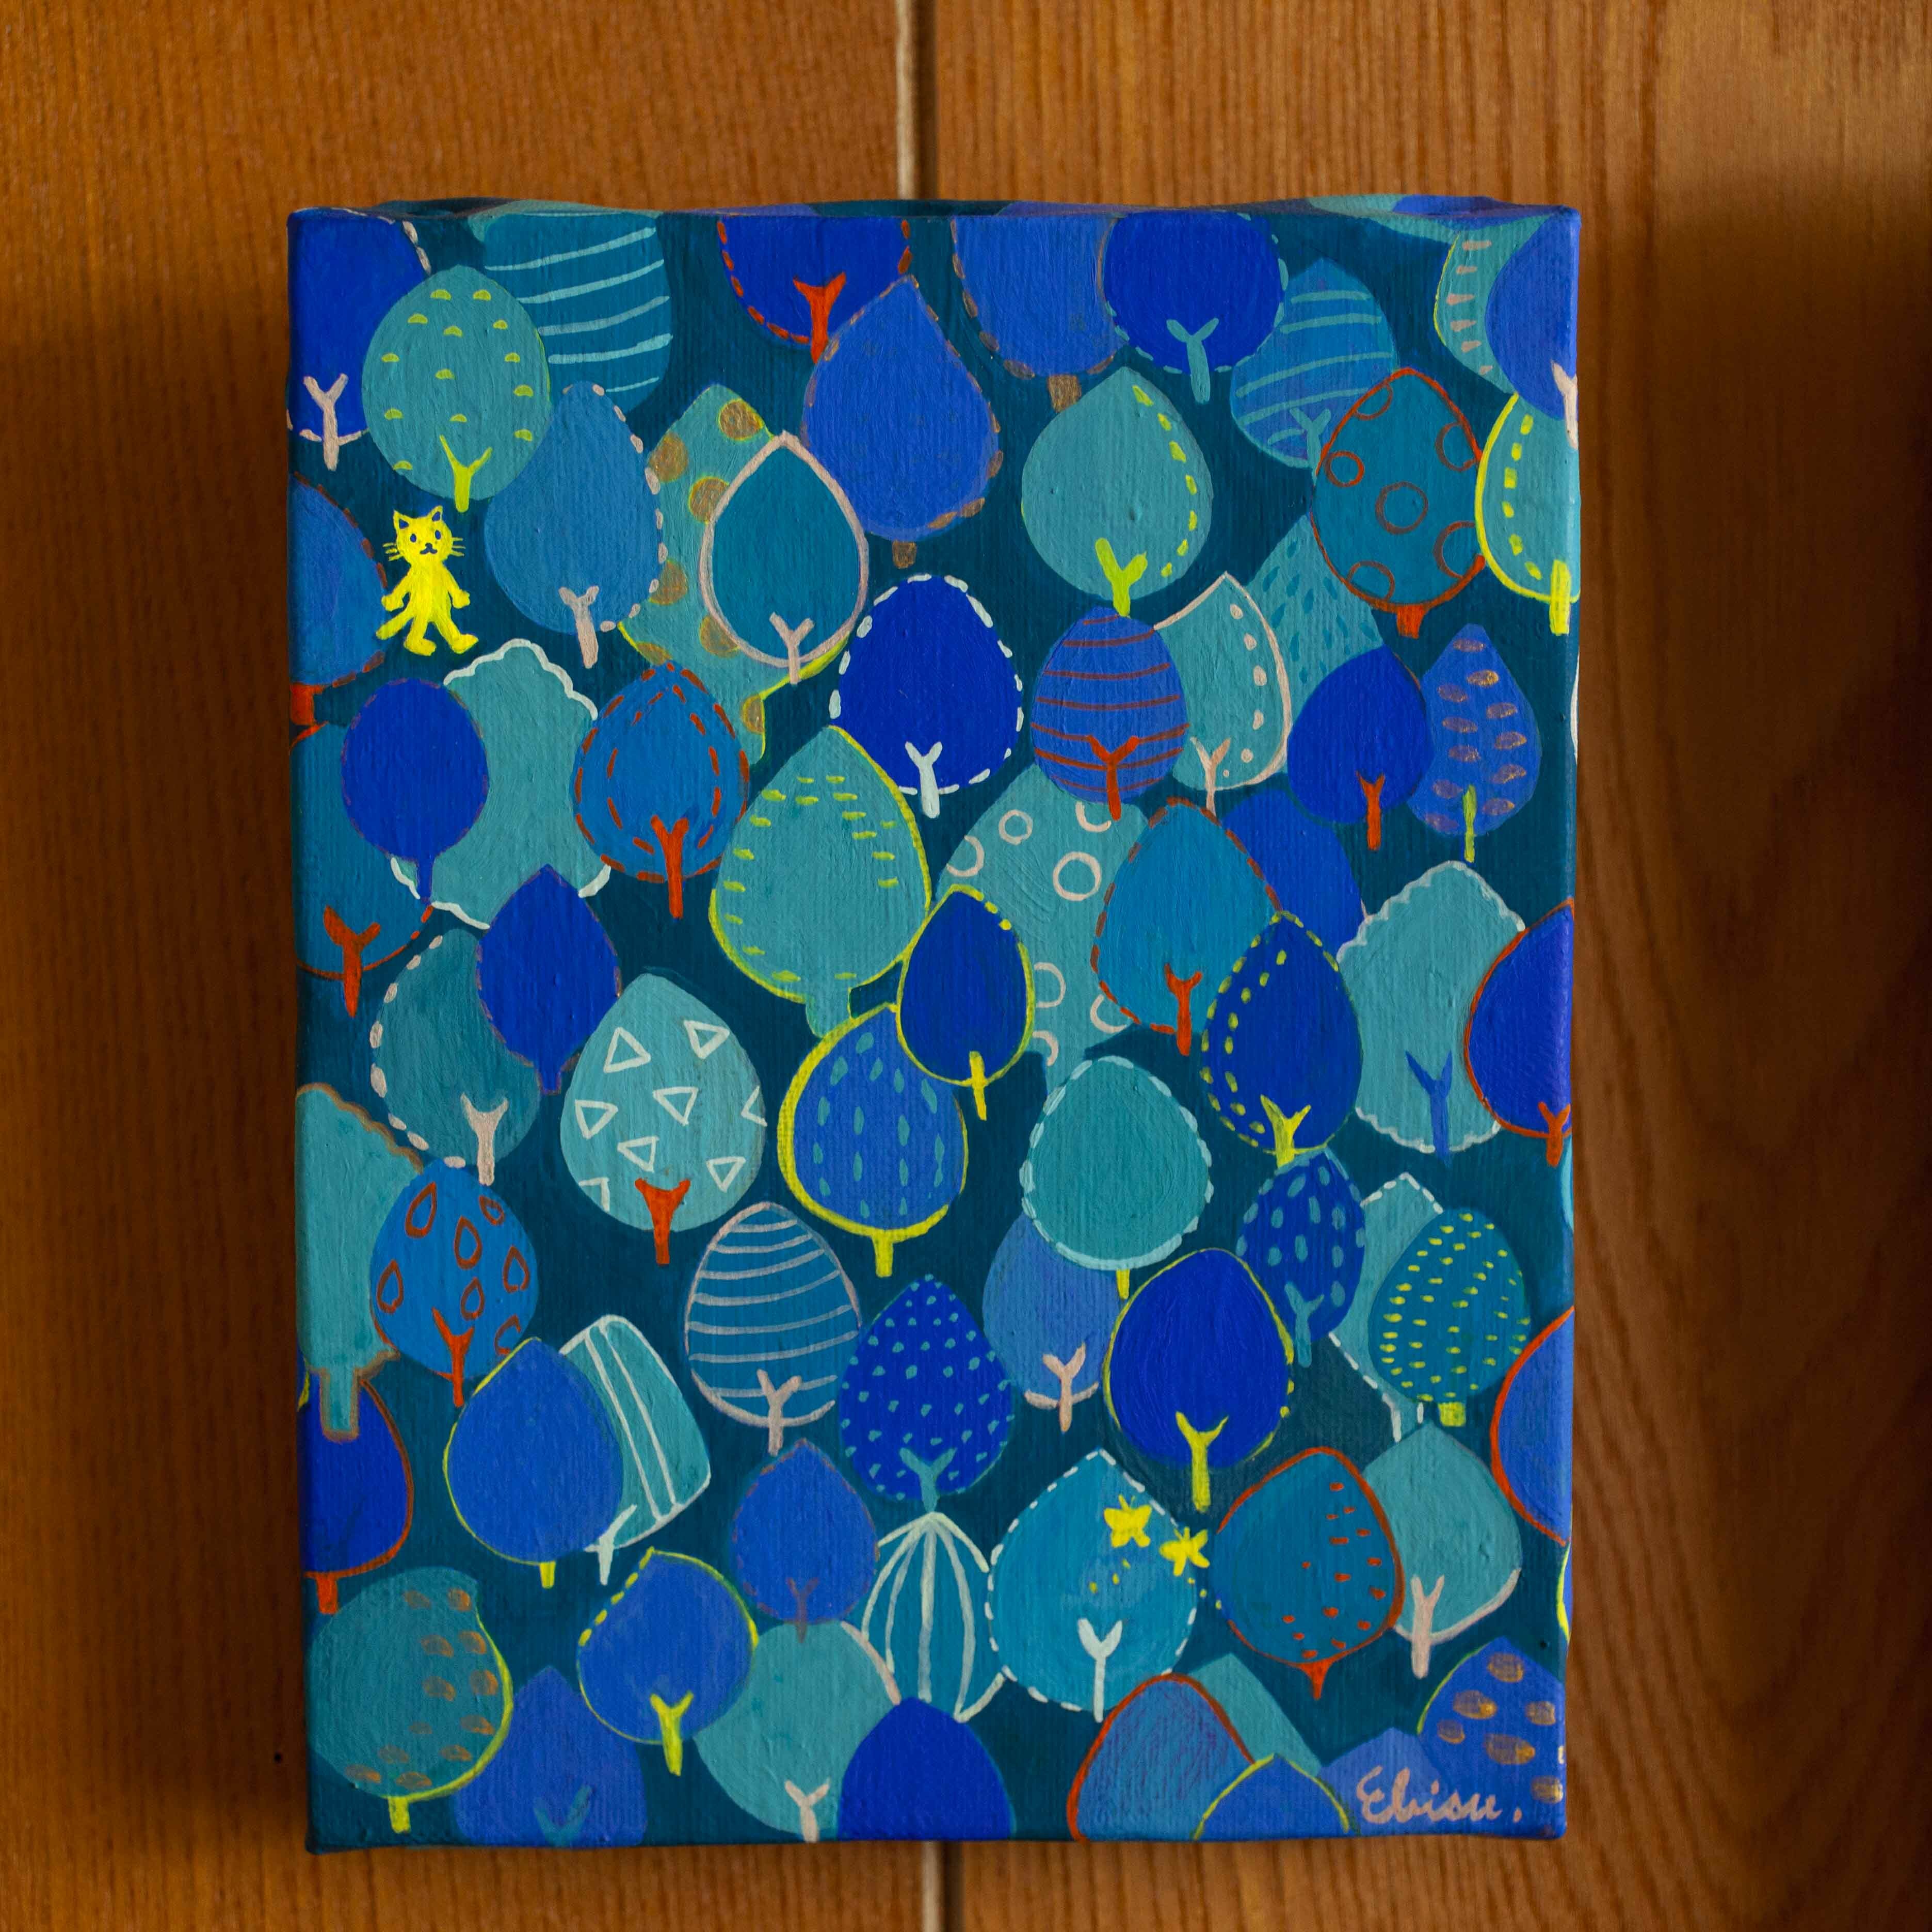 青の森 絵画 アート 猫 ネコ ねこ アクリル絵の具 イラスト 森林 青色 青 ブルー 森 森のアトリエ